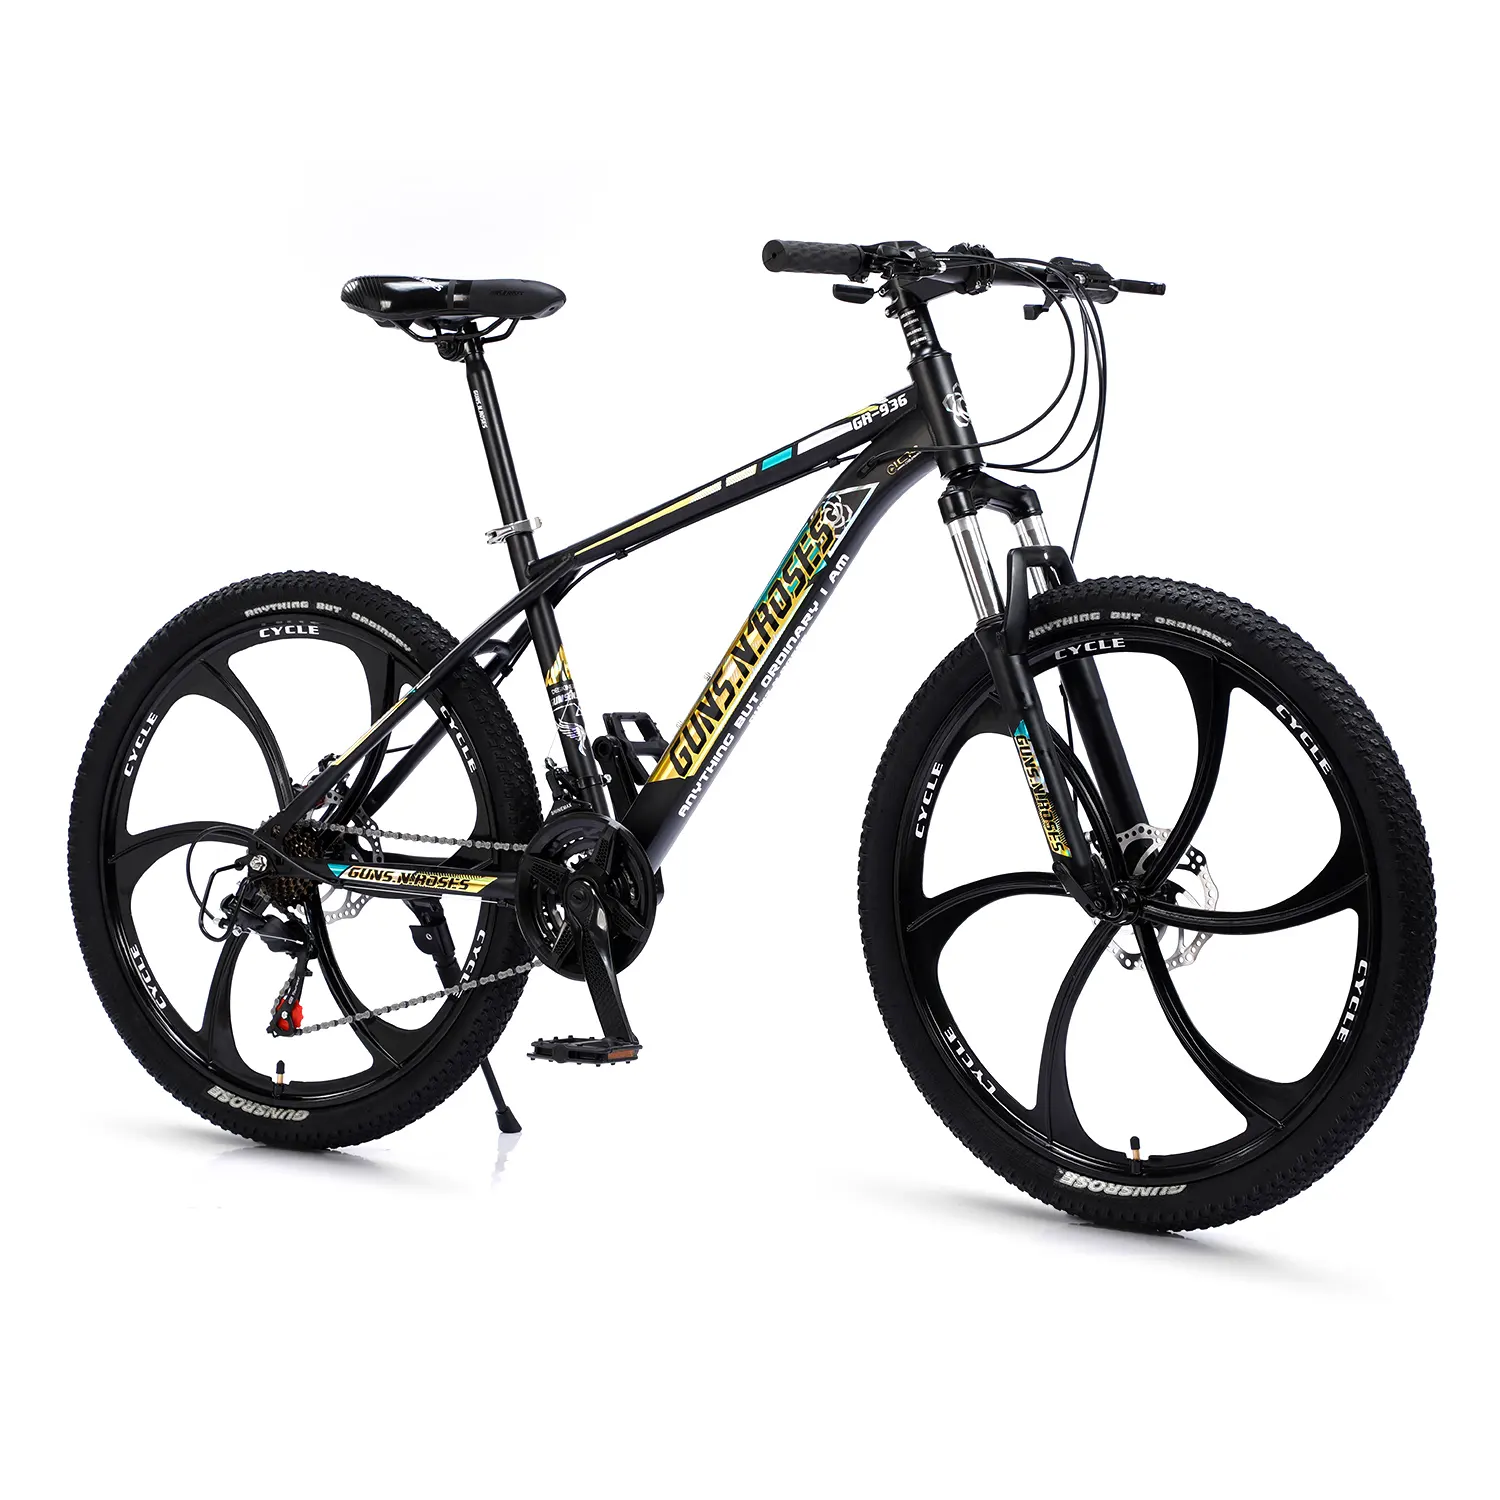 최고 인기 상품 29 인치 스포츠 자전거 차가운 성숙한 산악 자전거, OEM 색깔 27.5 인치 합금 본래 산악 자전거, 정면 suspensionmtb